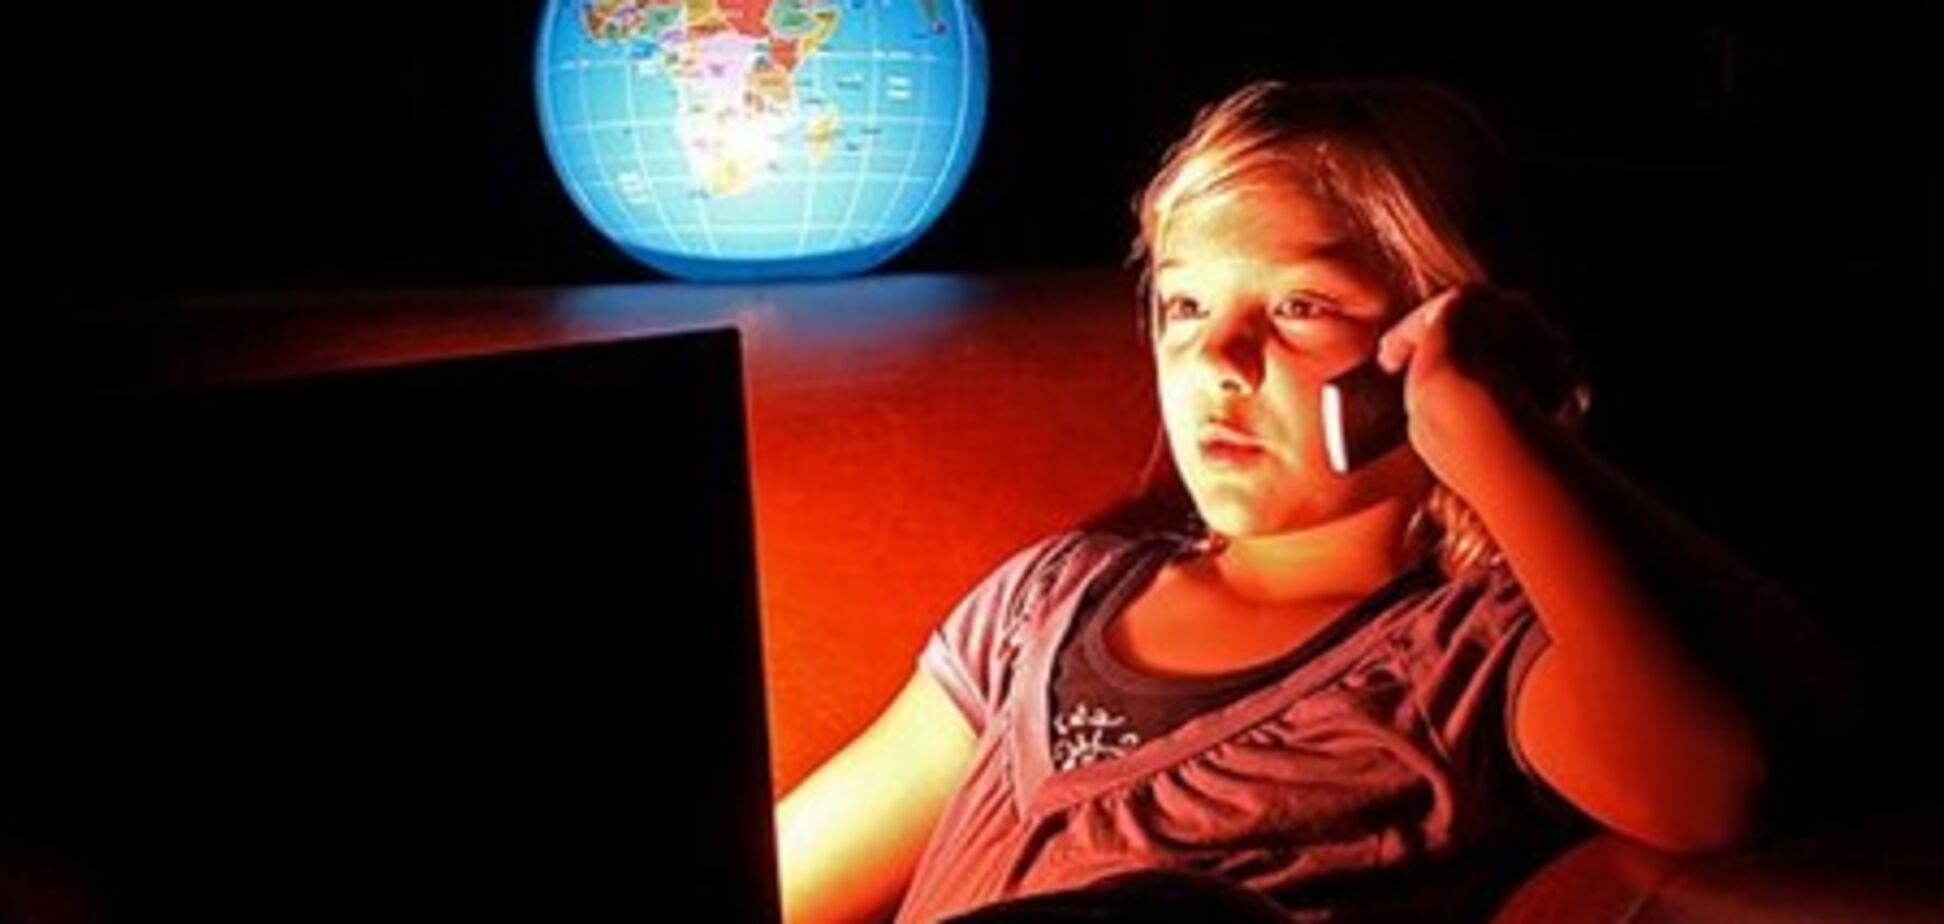 Без соцсетей почти 20% подростков перестанут общаться - исследование